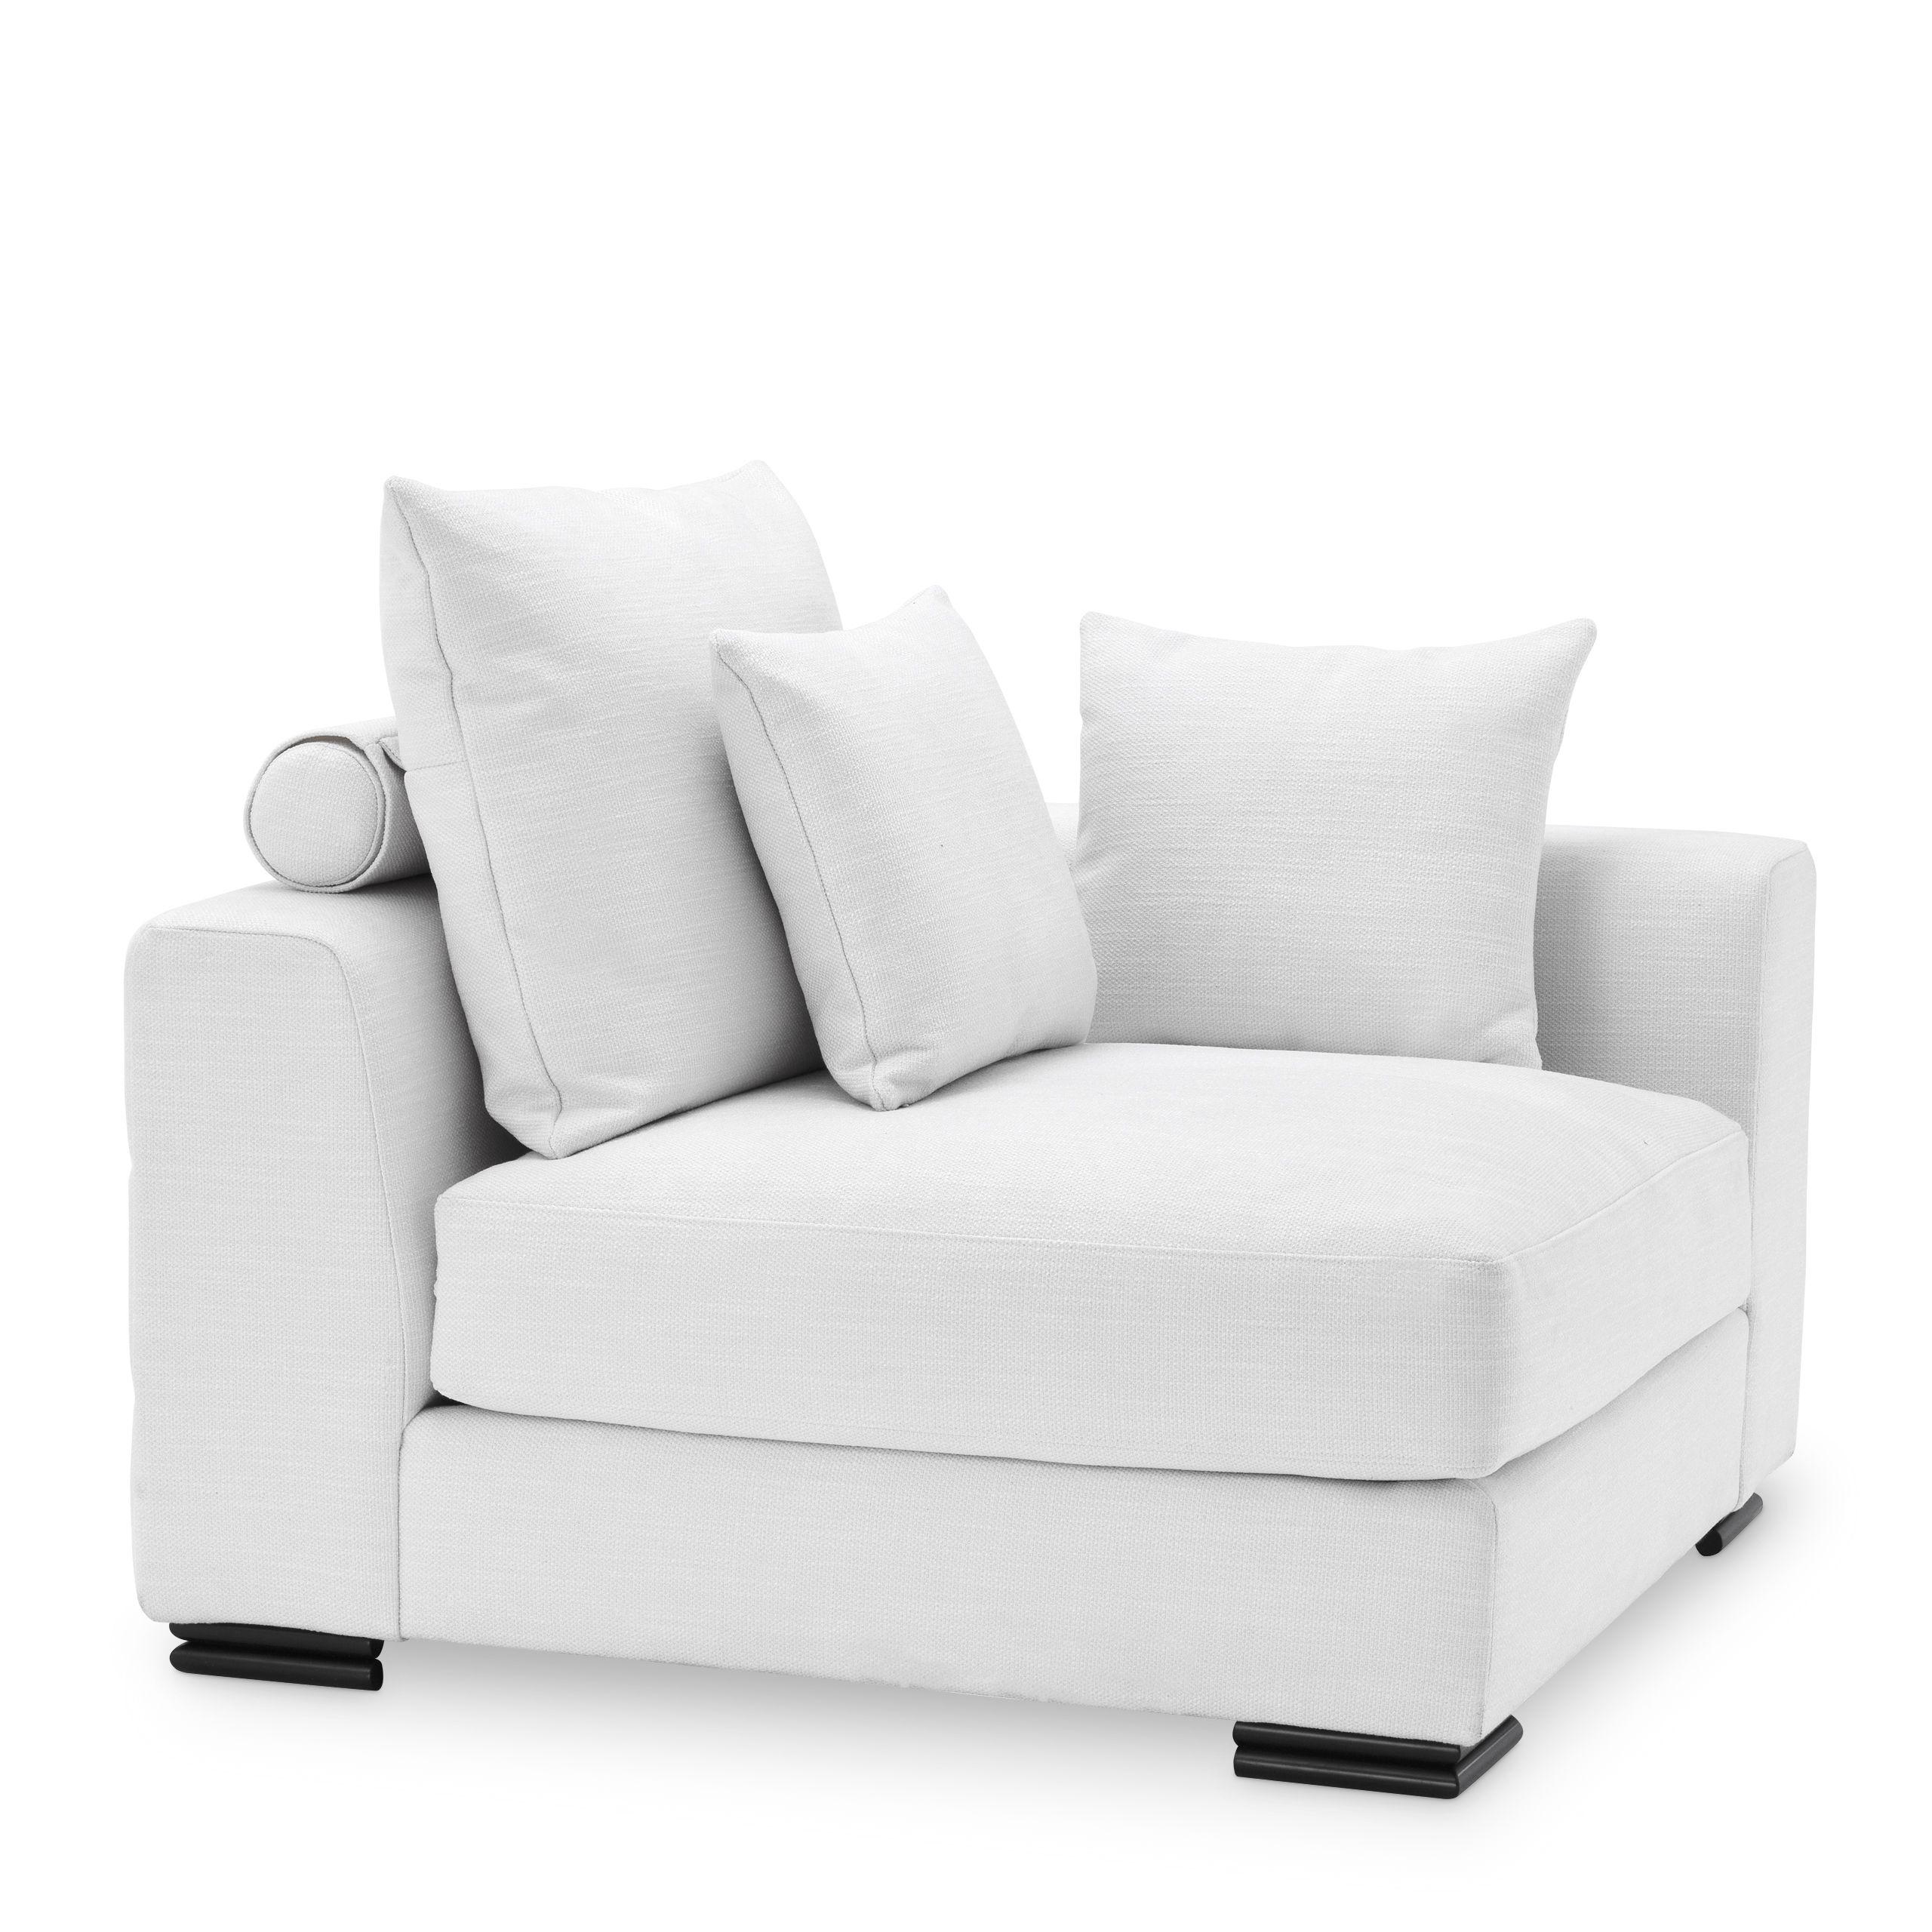 Купить Модульный диван Sofa Clifford Corner в интернет-магазине roooms.ru